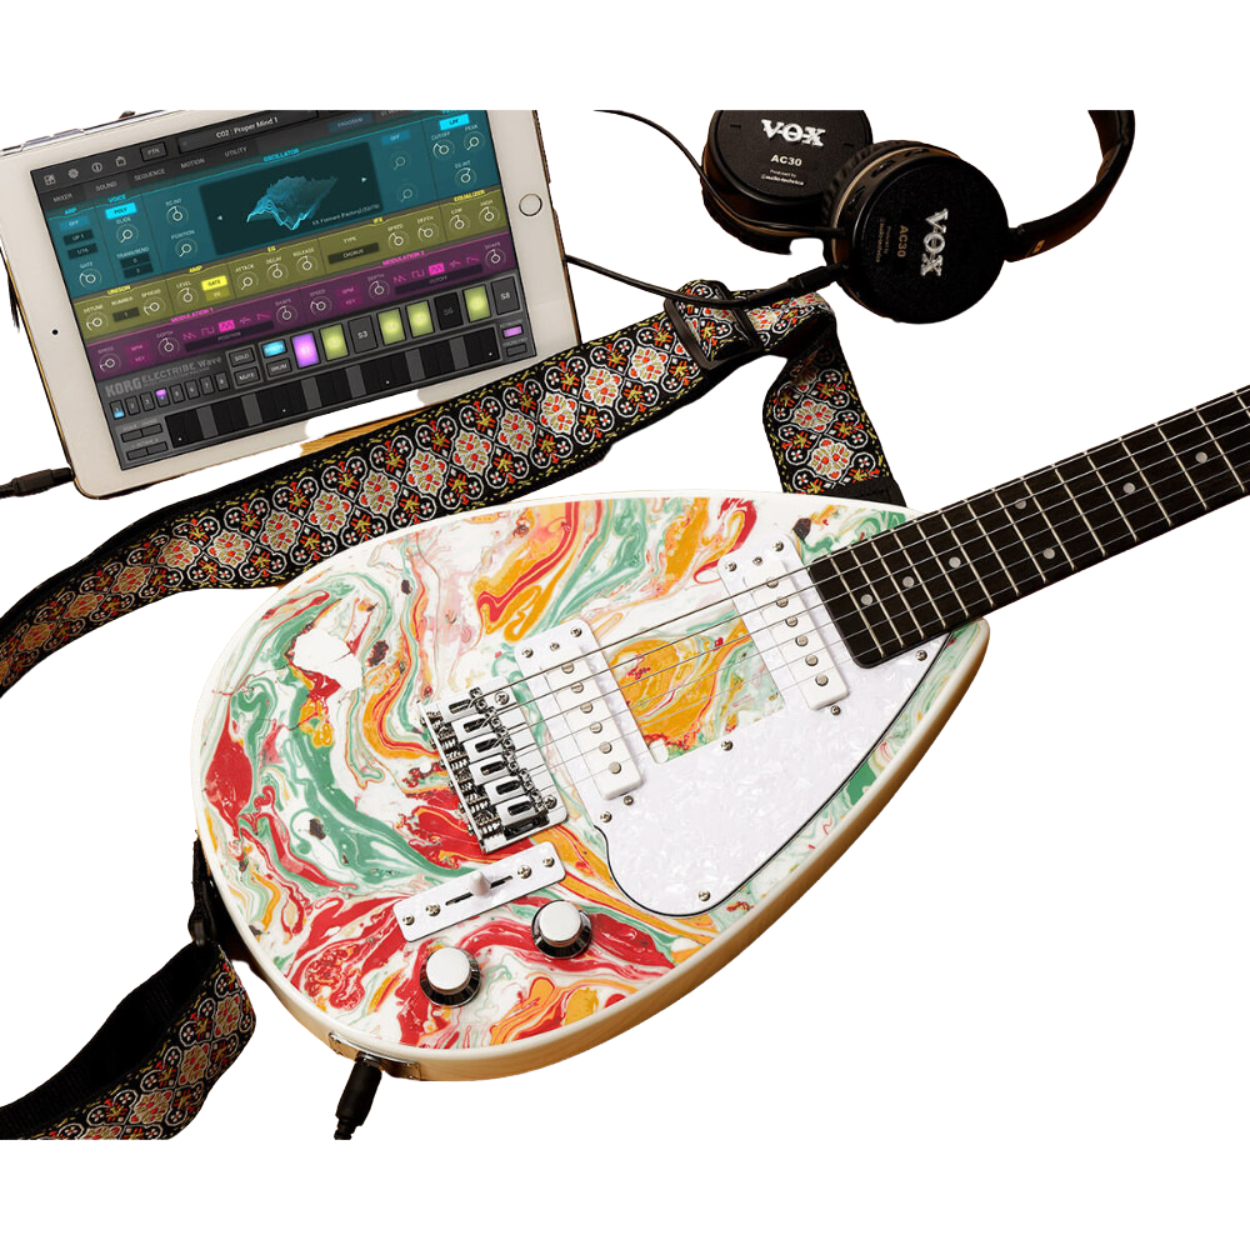 Vox Mark III Mini Teardrop In Marble Finish Mini Electric Guitar